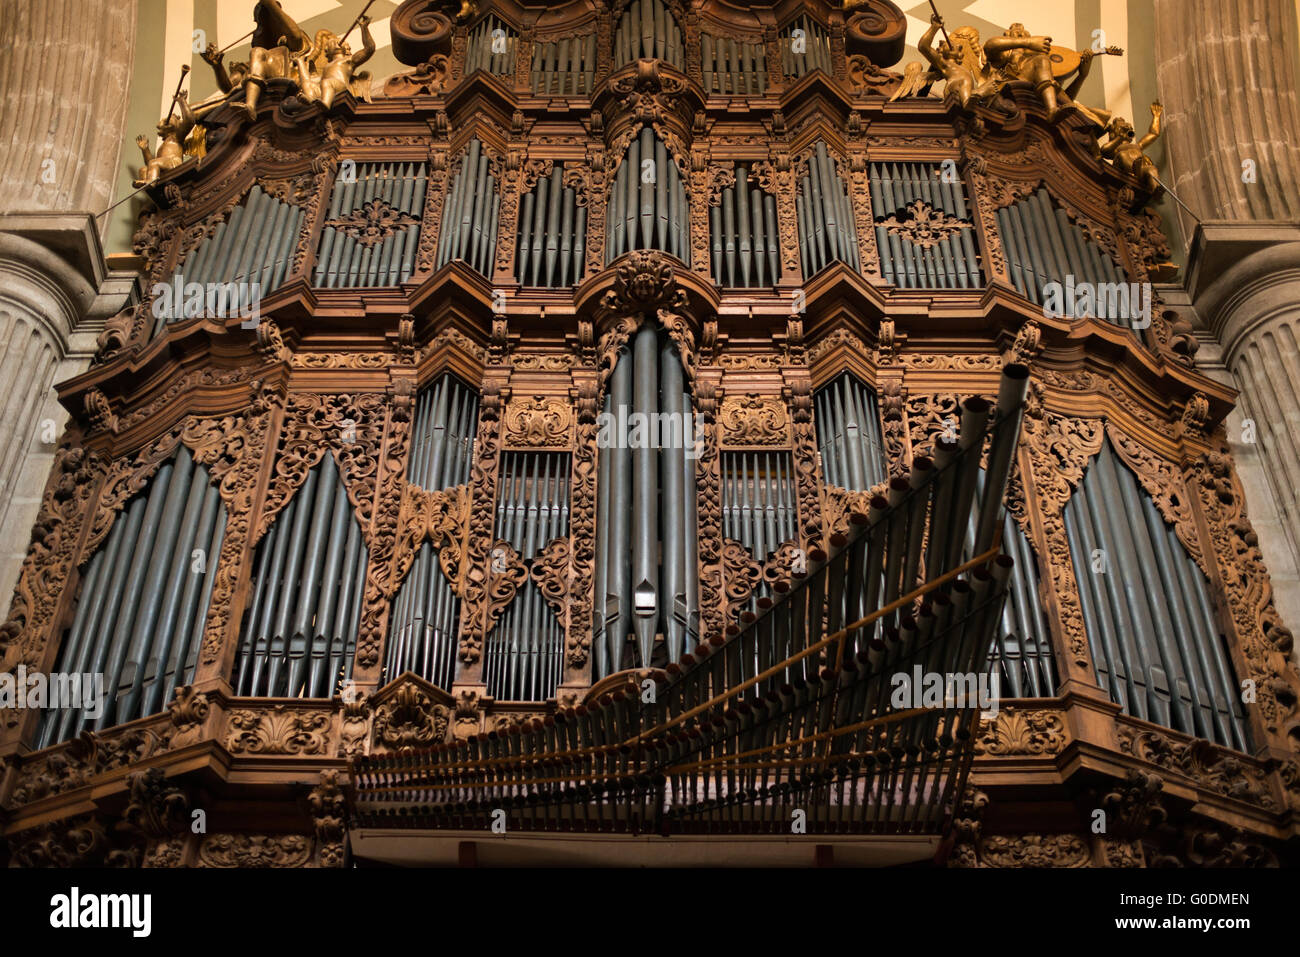 Mexiko-Stadt, Mexiko - eines der zwei Orgeln in der Kathedrale. Der Dom beherbergt zwei größten Orgeln aus dem 18. Jahrhundert in Amerika. Phasen von 1573 bis 1813 erbaut, ist die Kathedrale von Mexiko-Stadt die größte römisch-katholische Kathedrale in Amerika. Es befindet sich im Herzen der Altstadt von Mexiko-Stadt auf der einen Seite von den Zocalo. Stockfoto